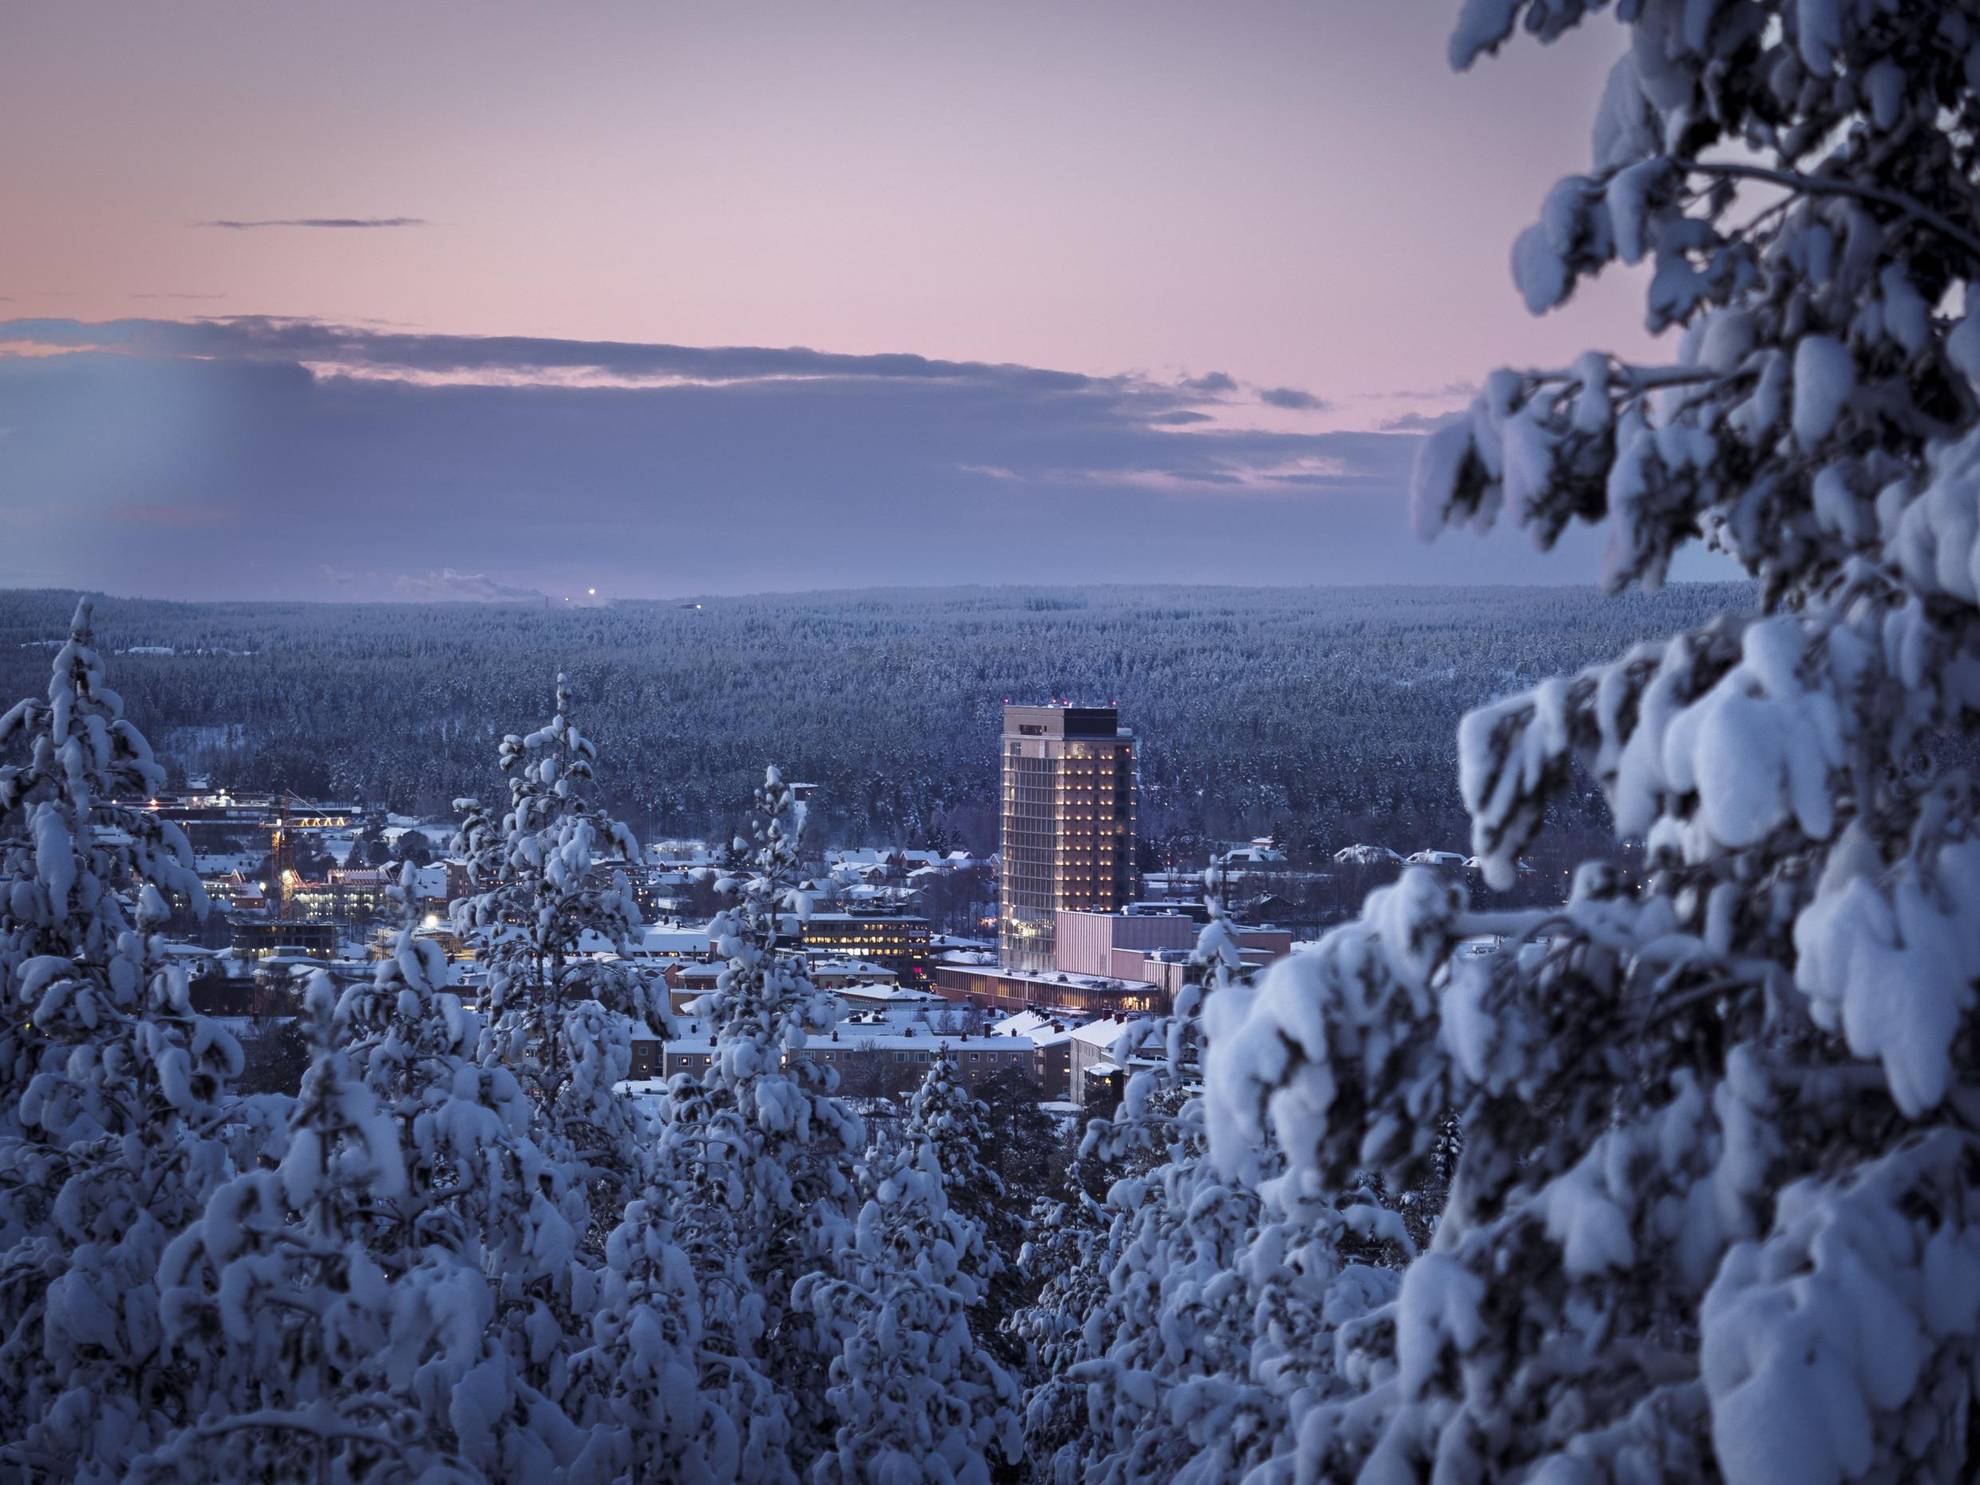 Une vue lointaine d'une ville sous la neige entourée d'arbres.  The Wood Hotel est le plus grand bâtiment de la ville.